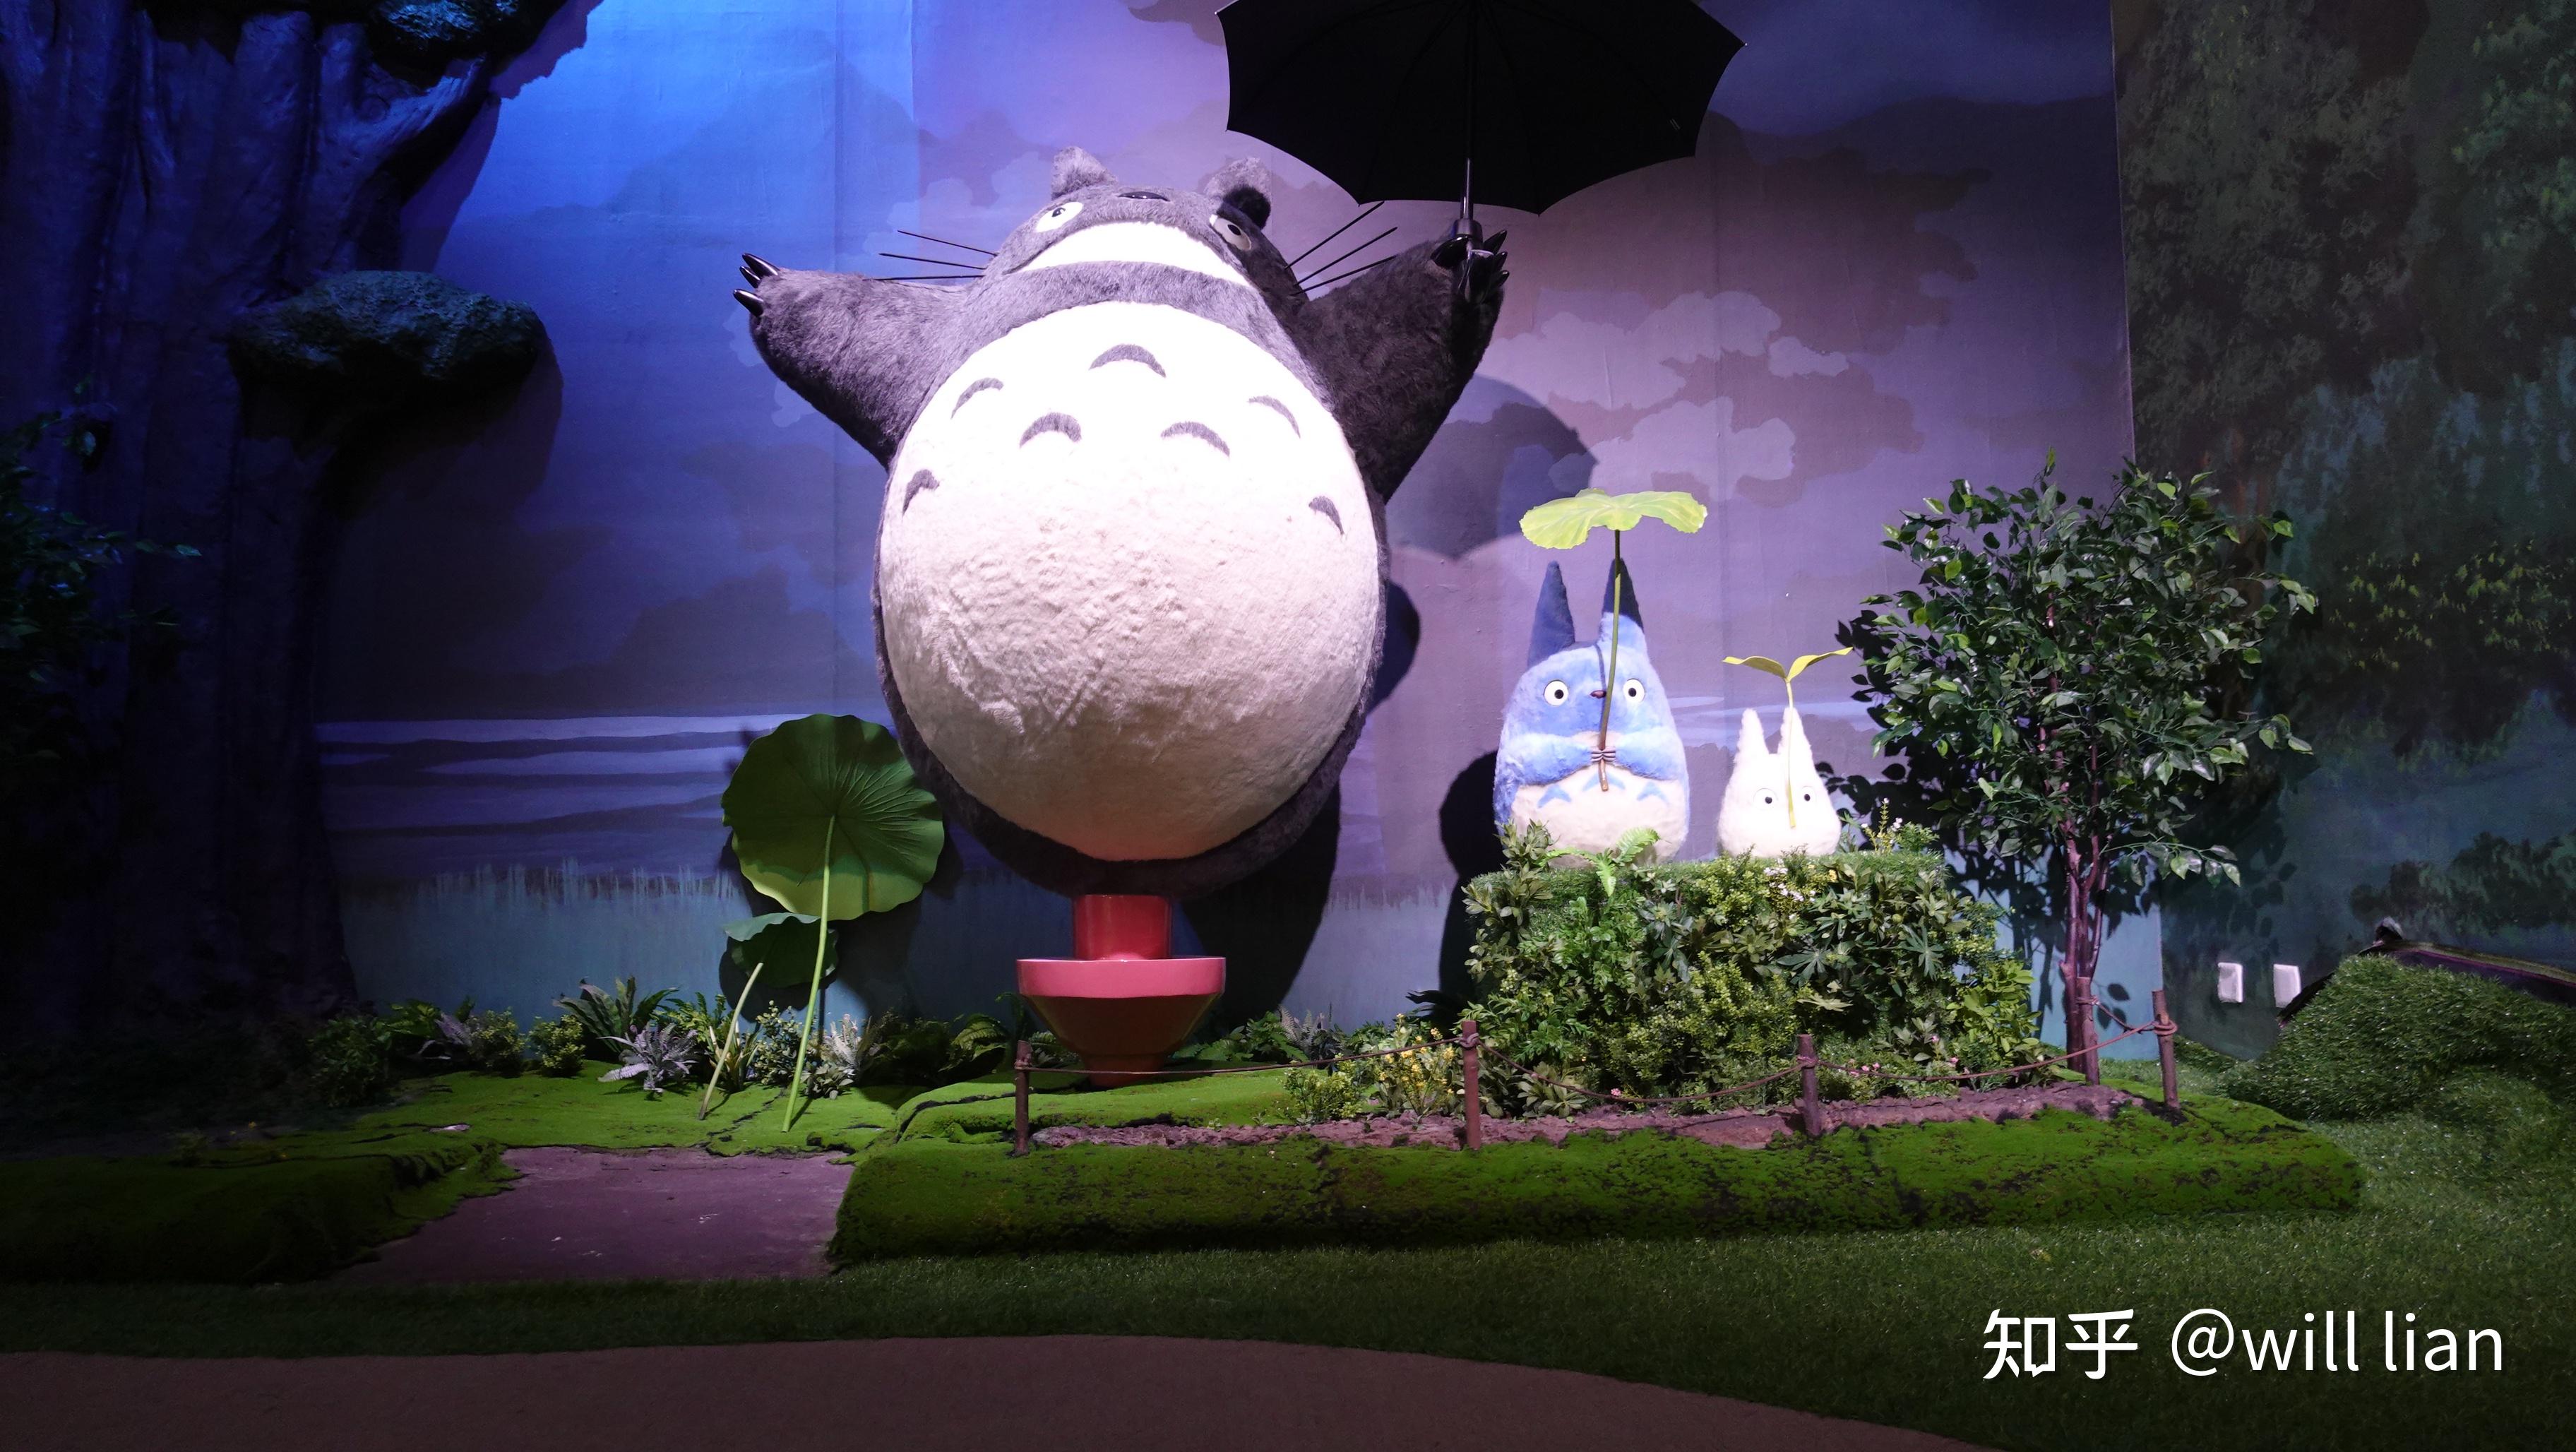 由今日美术馆举办的宫崎骏与吉卜力的世界动画艺术展在北京开幕有哪些